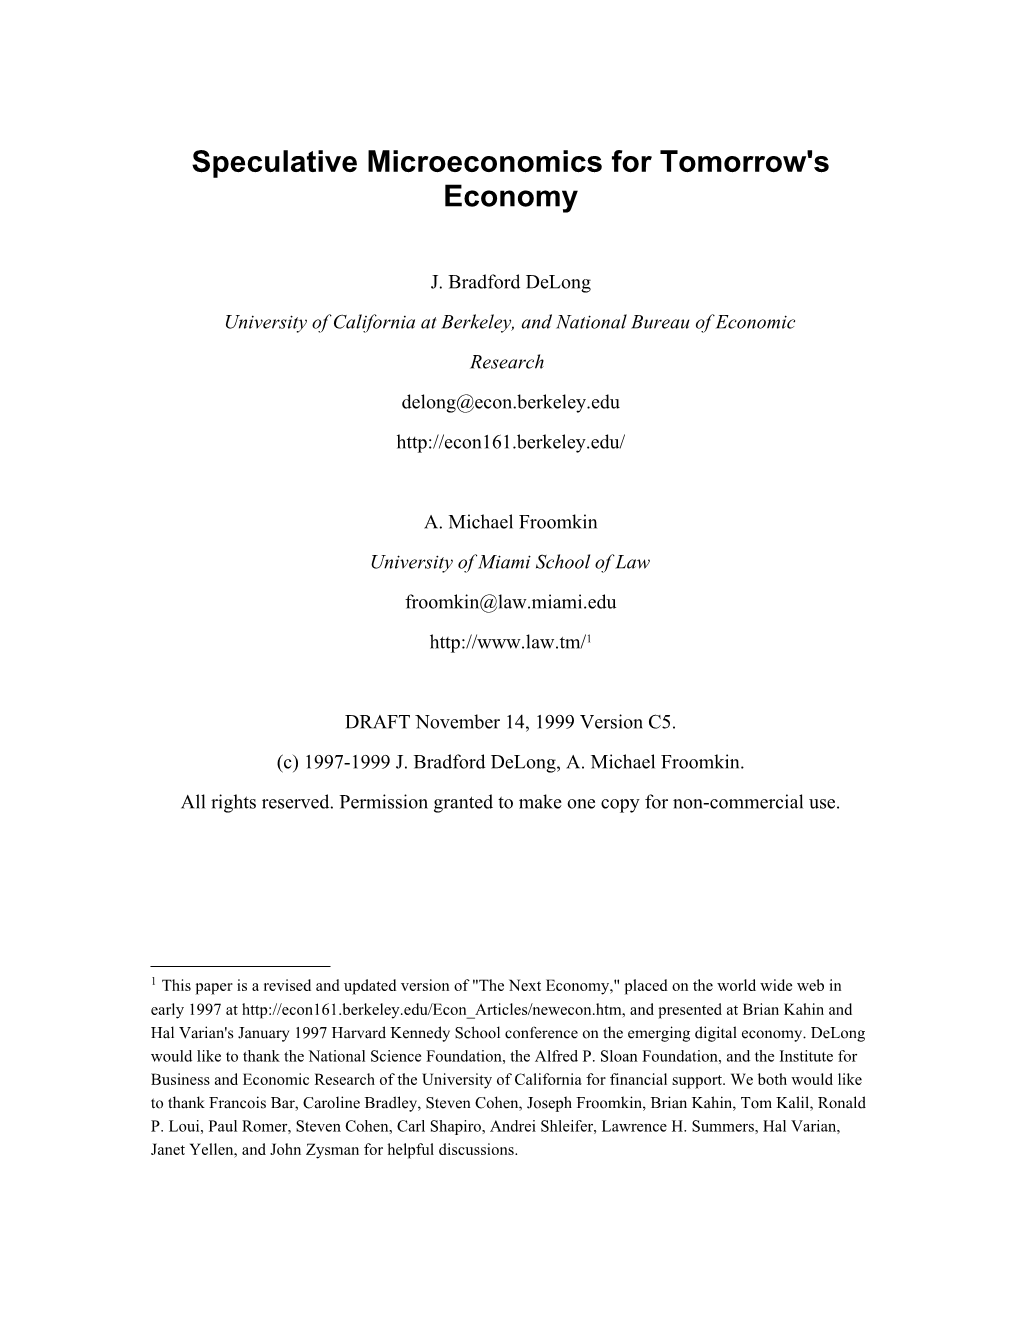 Speculative Microeconomics for Tomorrow's Economy